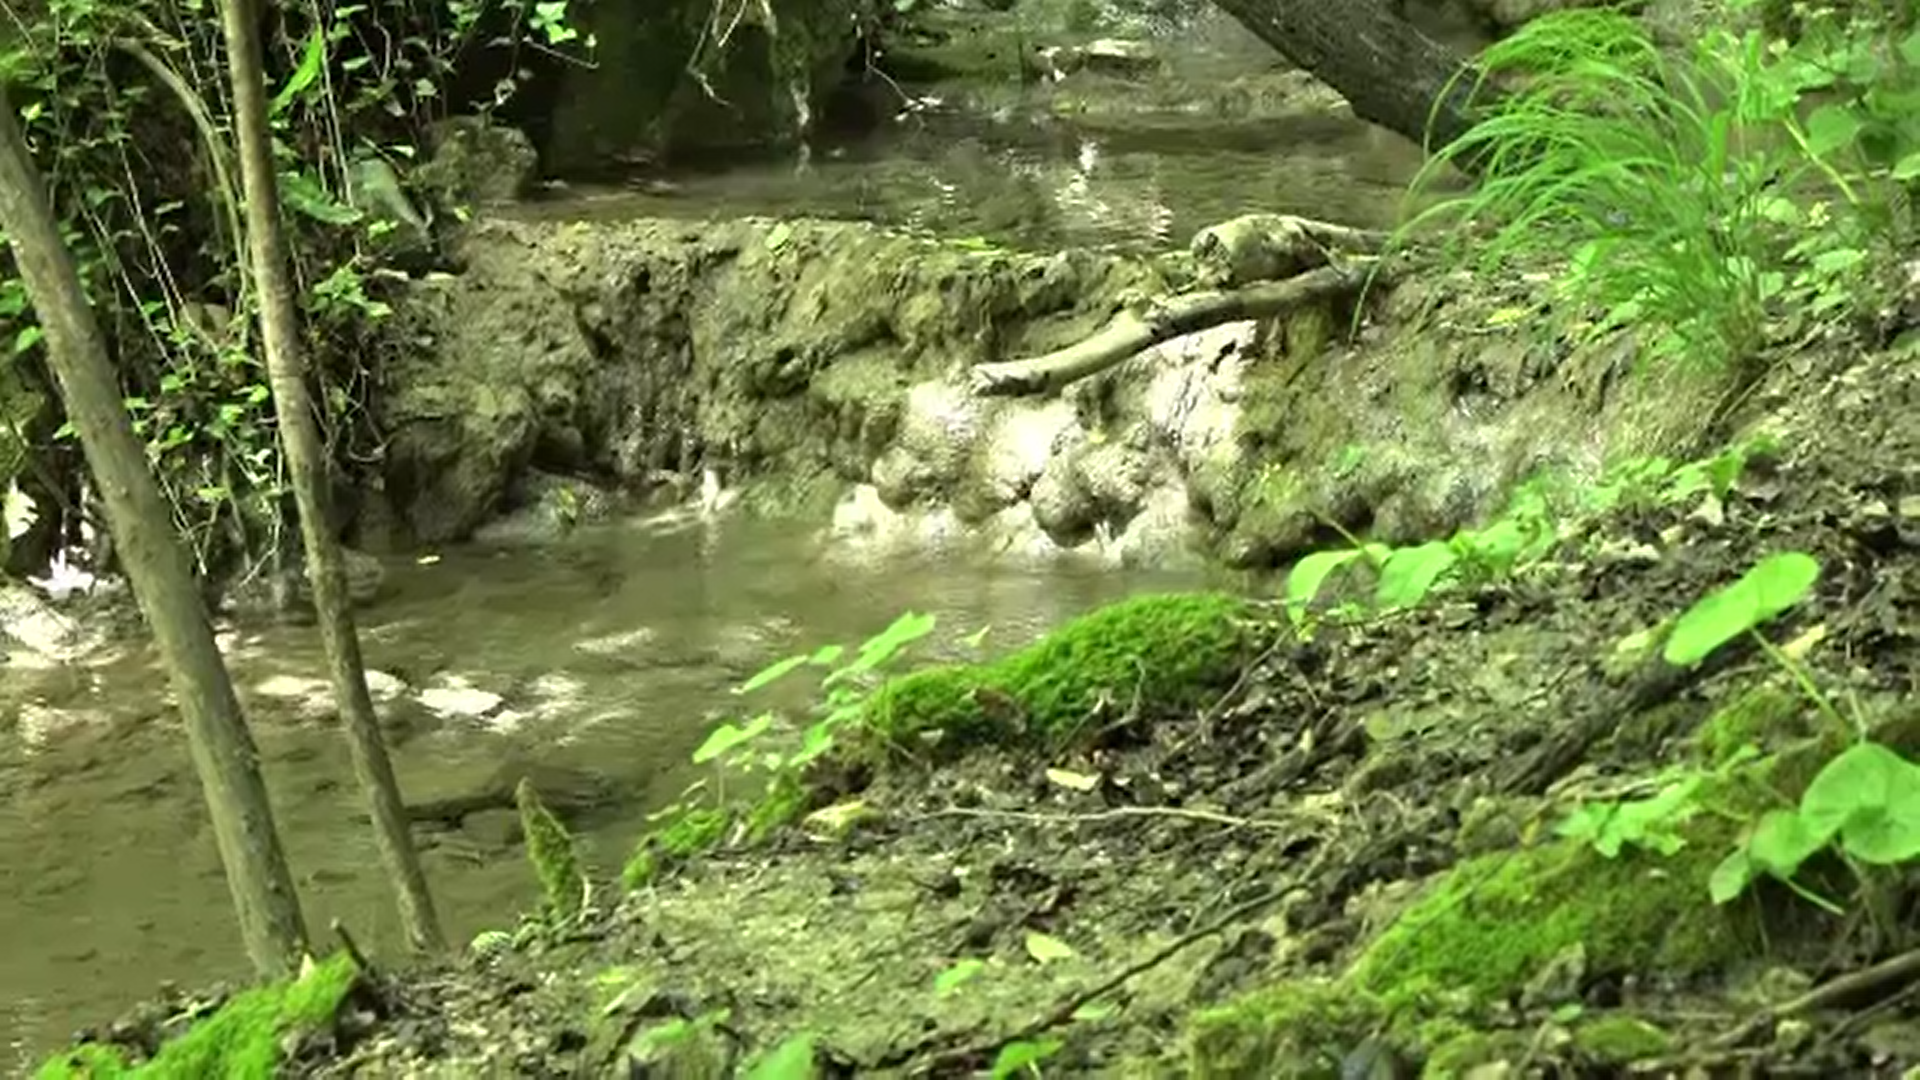 Un izvor a cărui apă calcaroasă transformă totul în piatră a fost descoperit într-o pădure din Bihor